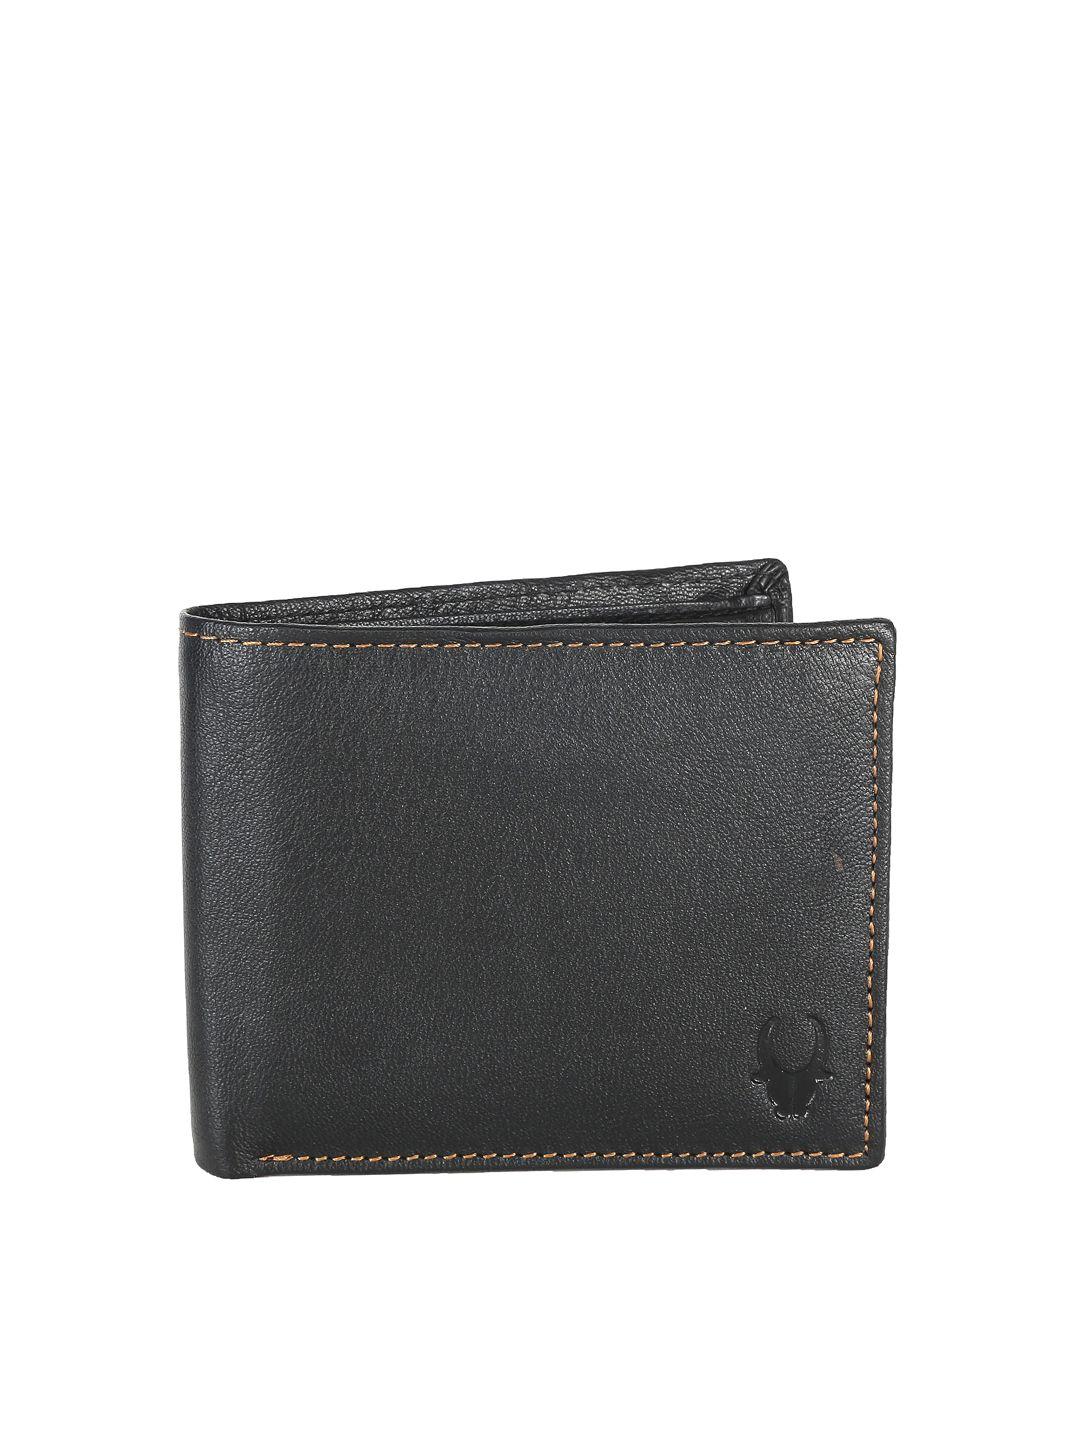 wildhorn unisex black genuine leather wallet